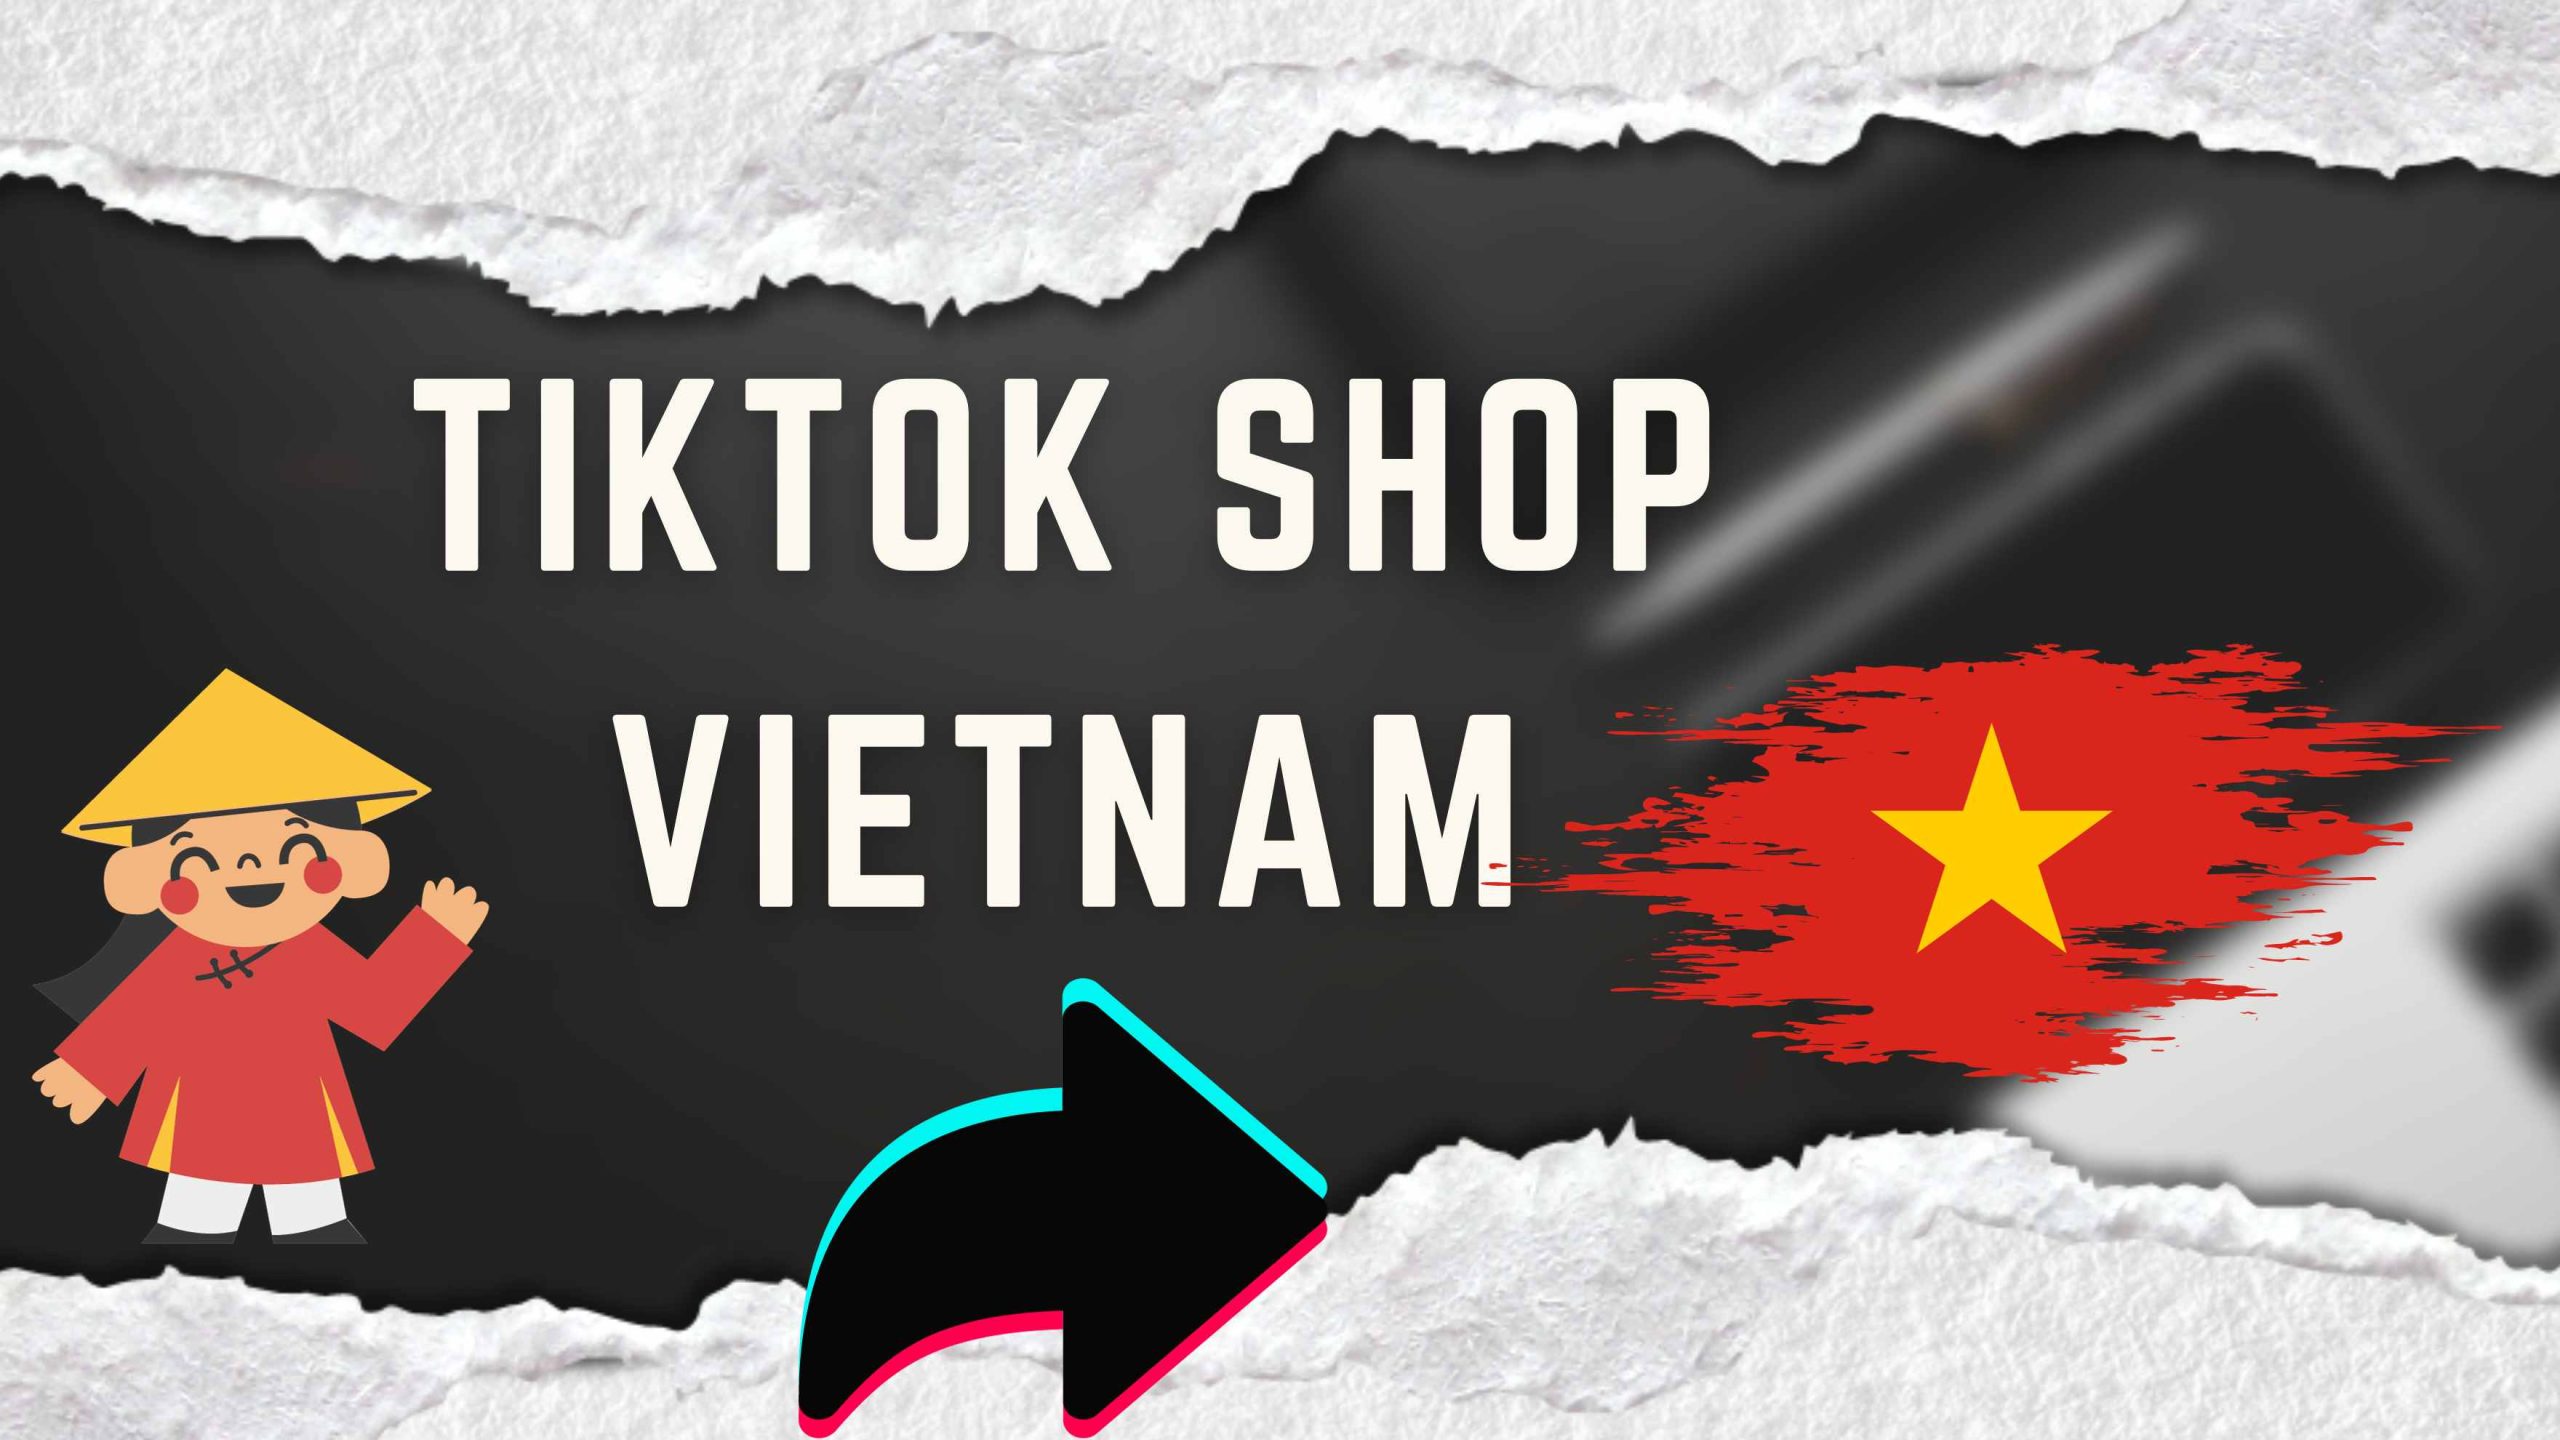 TikTok Shop Vietnam